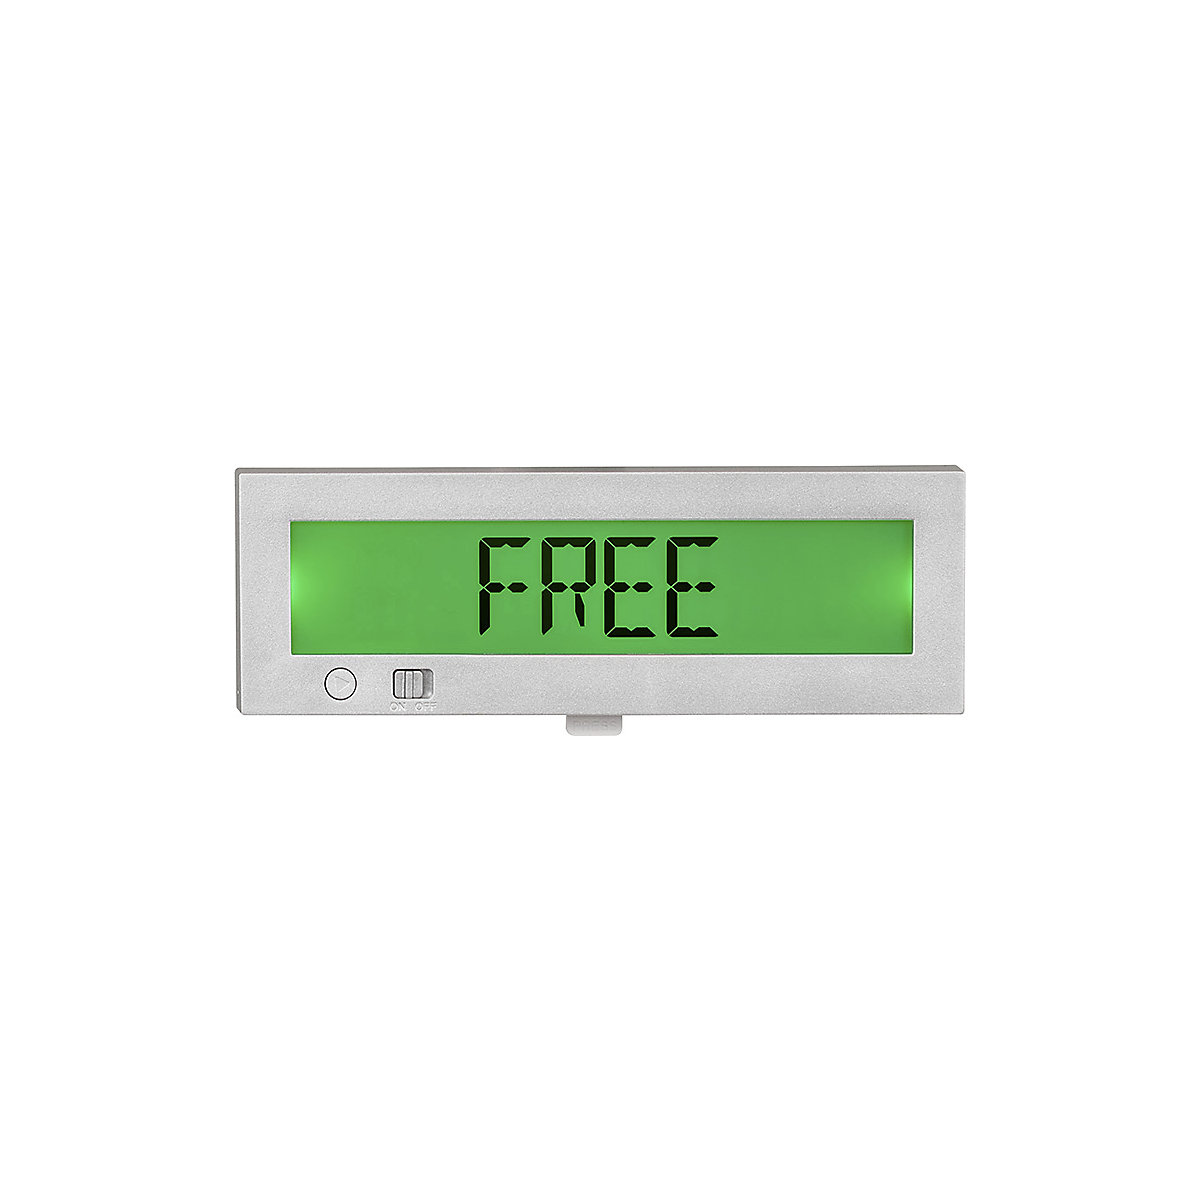 Digitalna tablica za vrata Free/Occupied (prosto/zasedeno) Go2 (Slika izdelka 29)-28